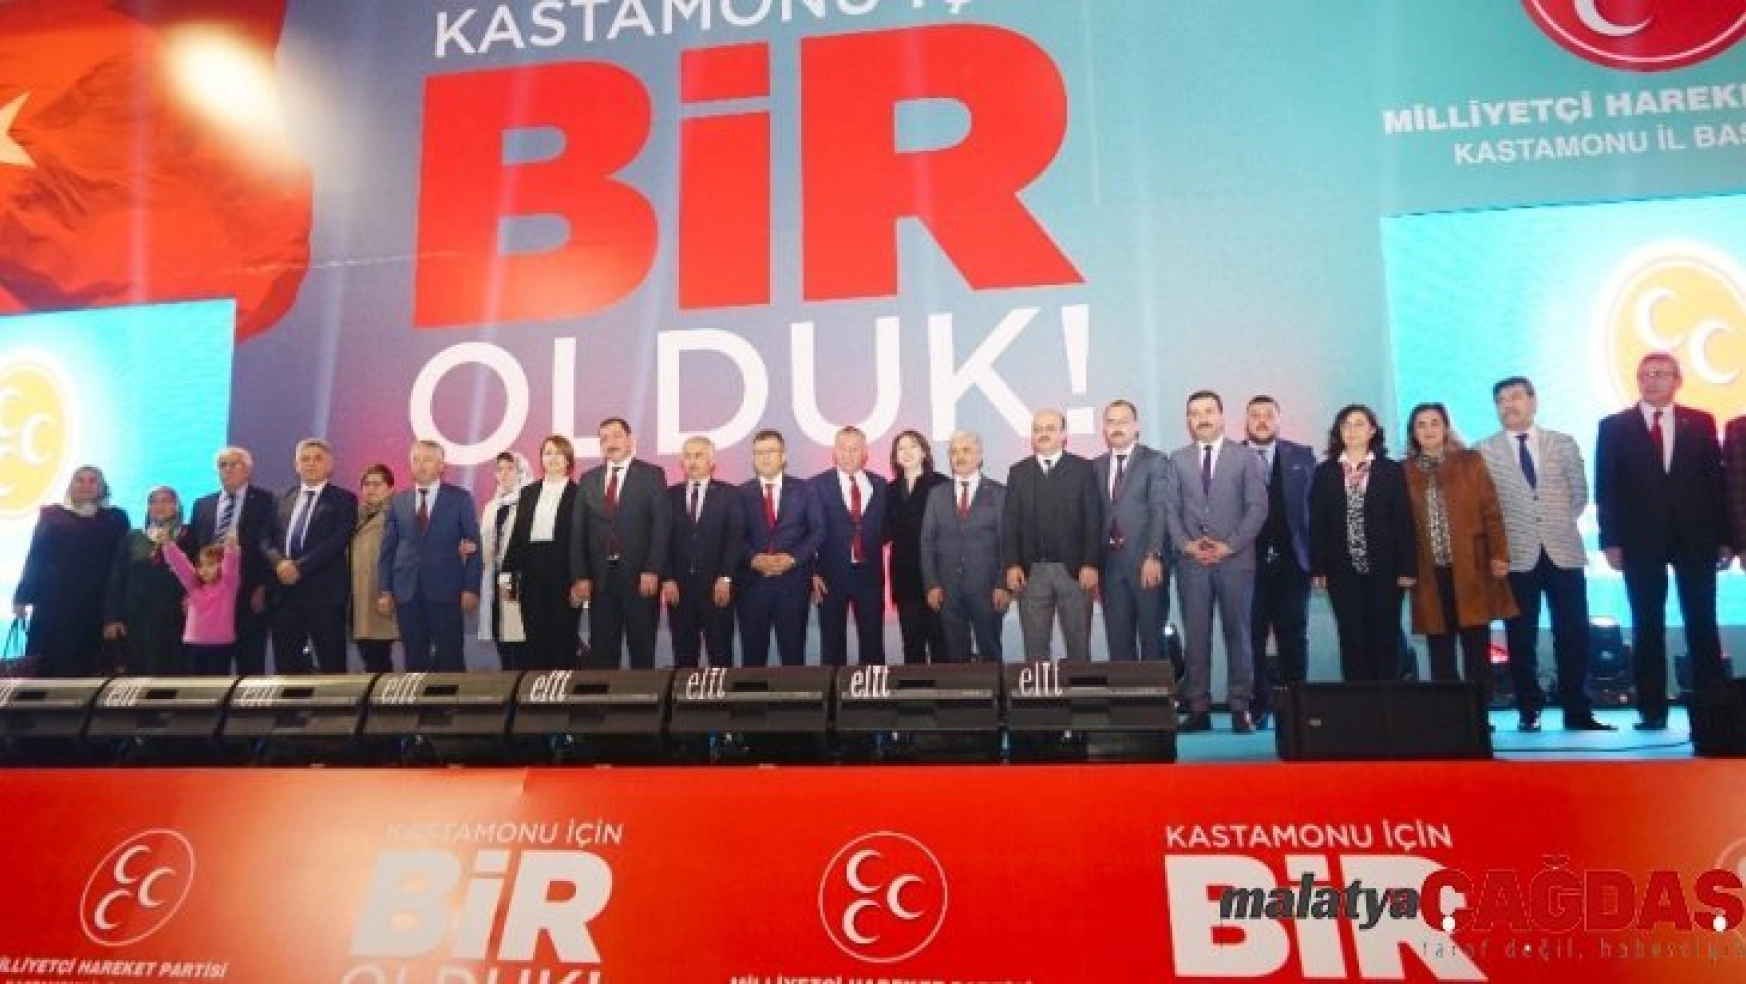 MHP Kastamonu İl Başkanlığının 1. yıl istişare toplantısı gerçekleştirildi